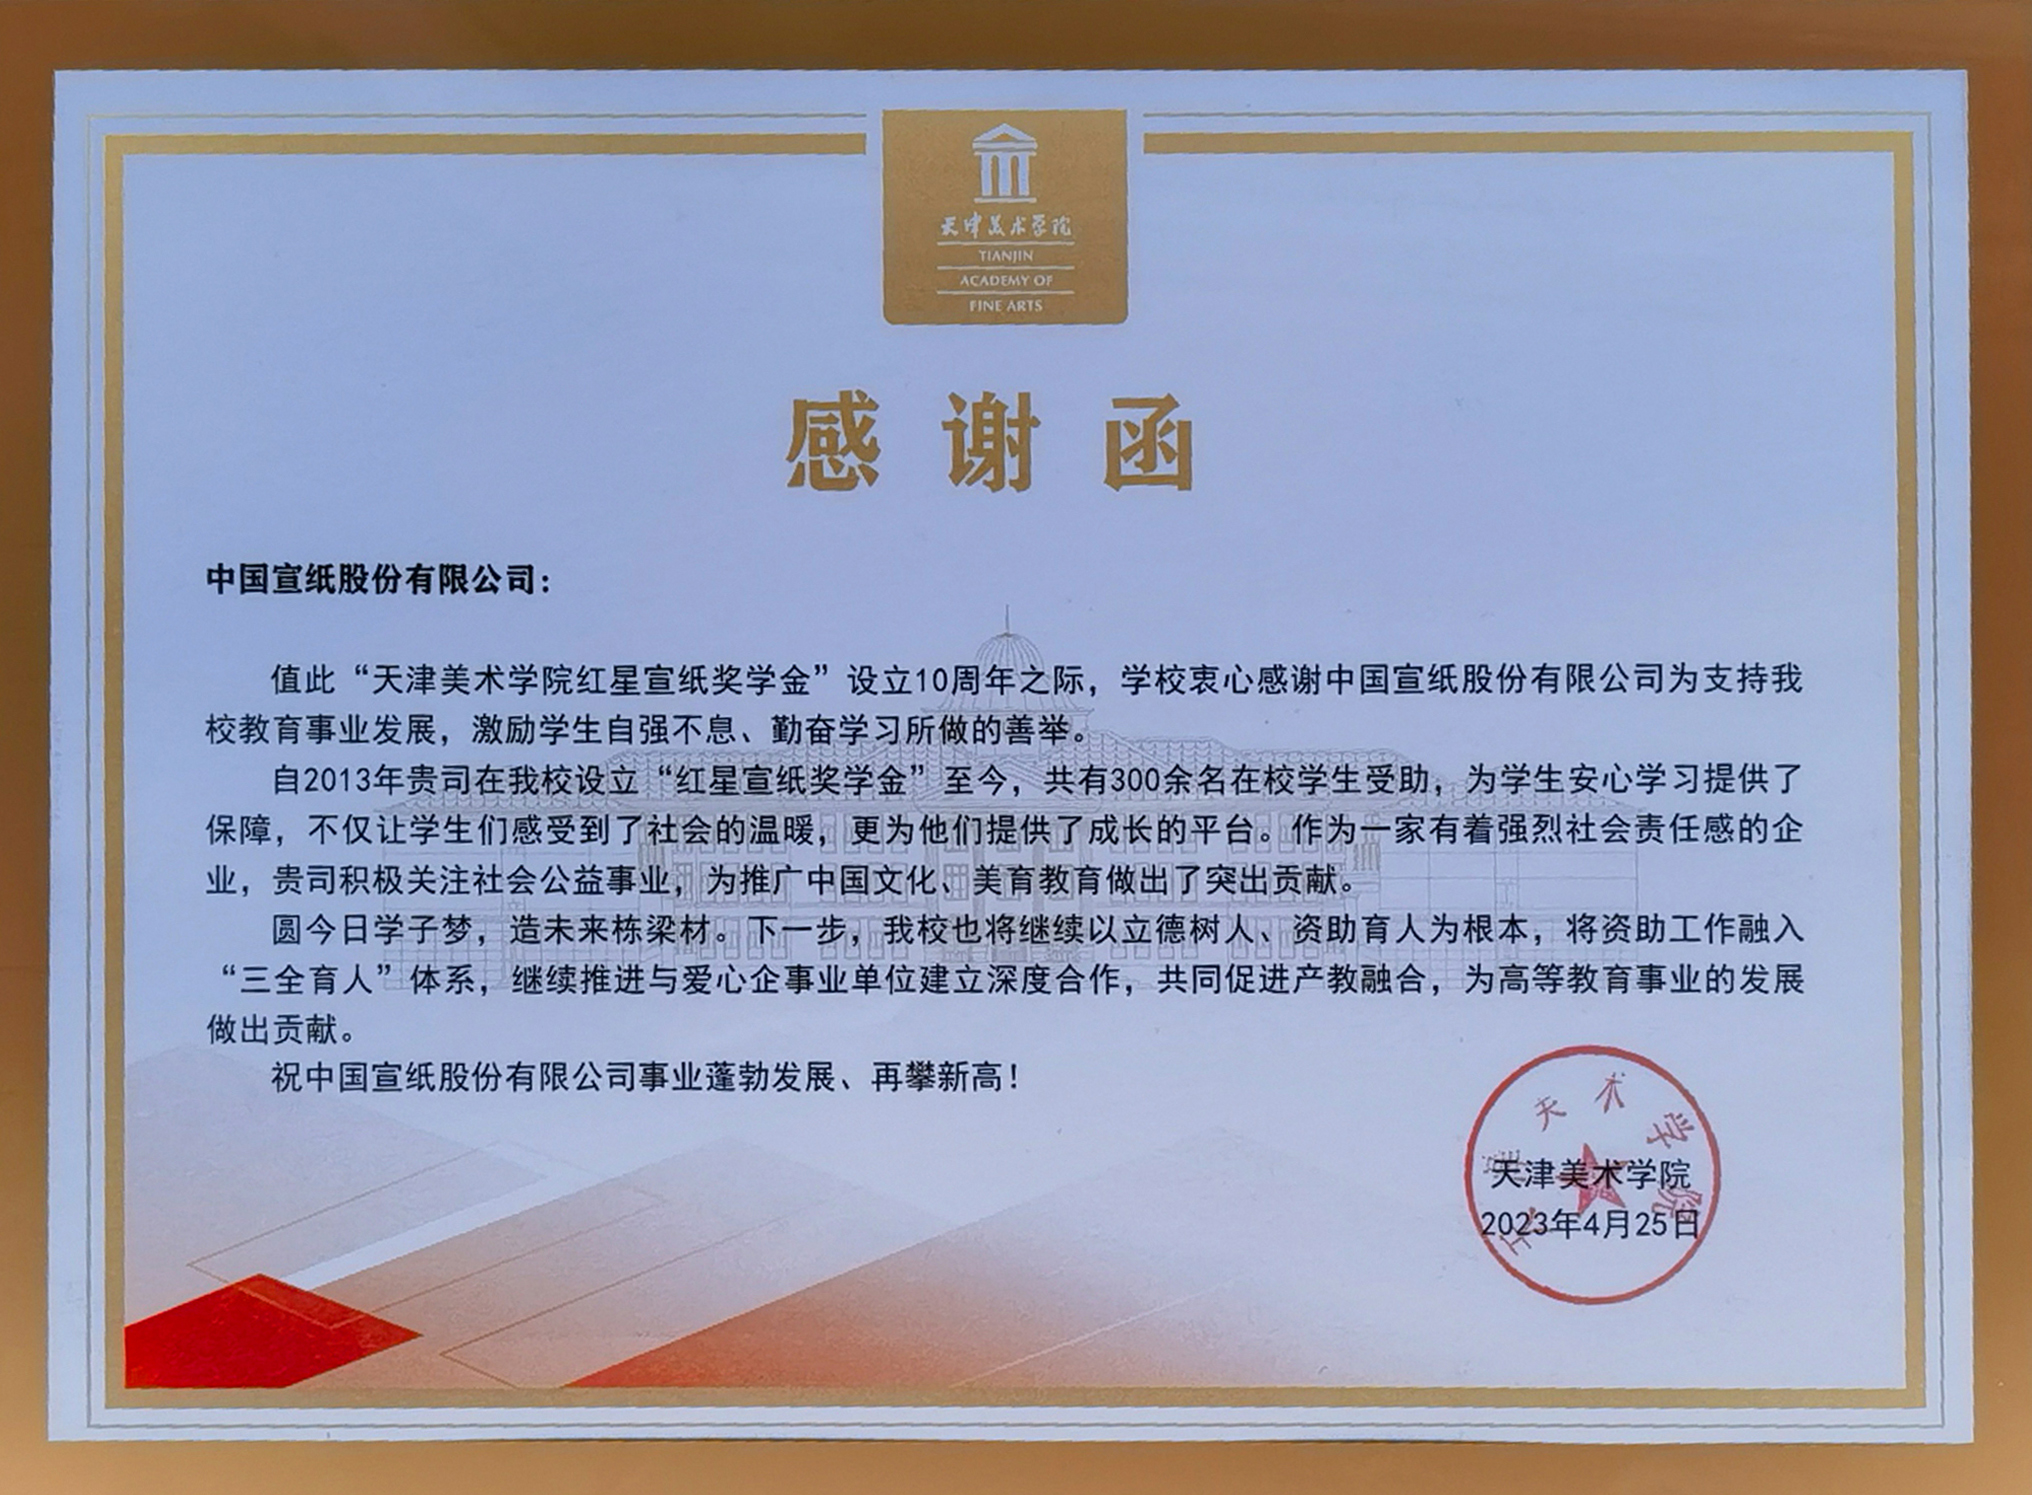 天津美院致函感谢红星宣纸奖学金设立10周年